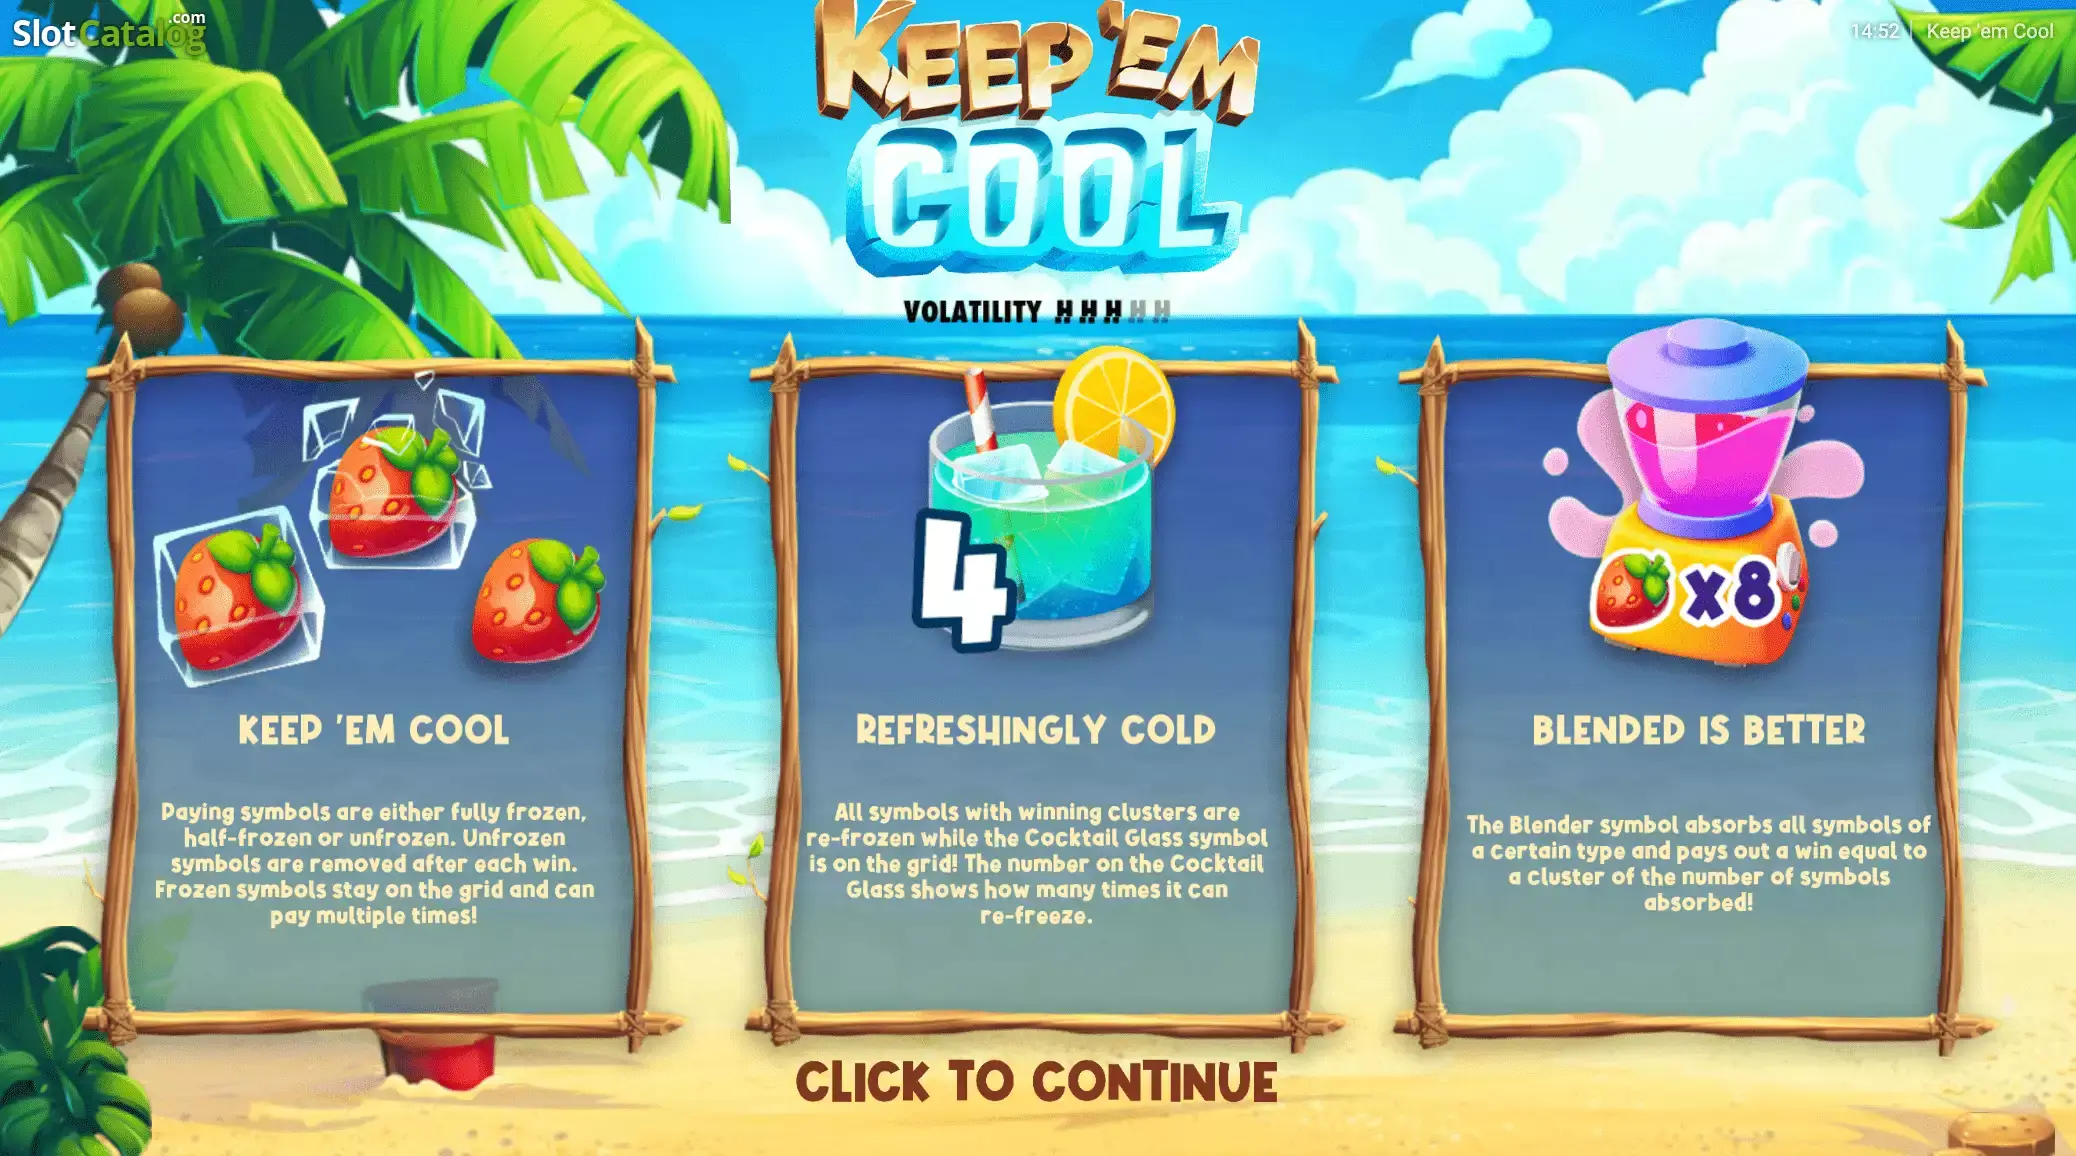 Keep ’em cool